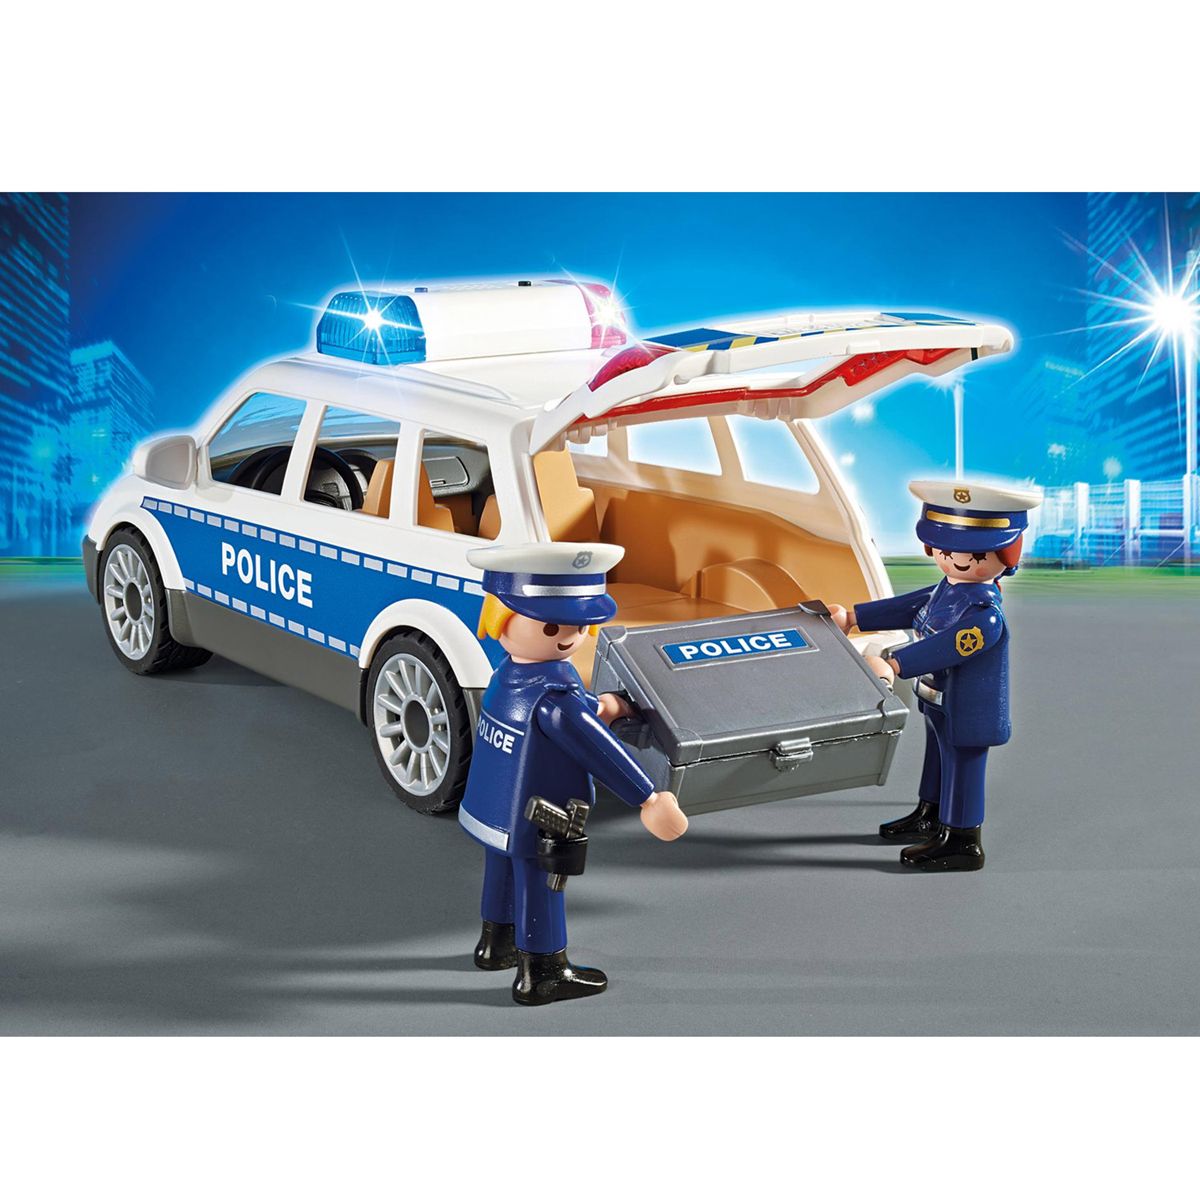 PLAYMOBIL 6920 - City Action - Voiture de policiers avec sirène